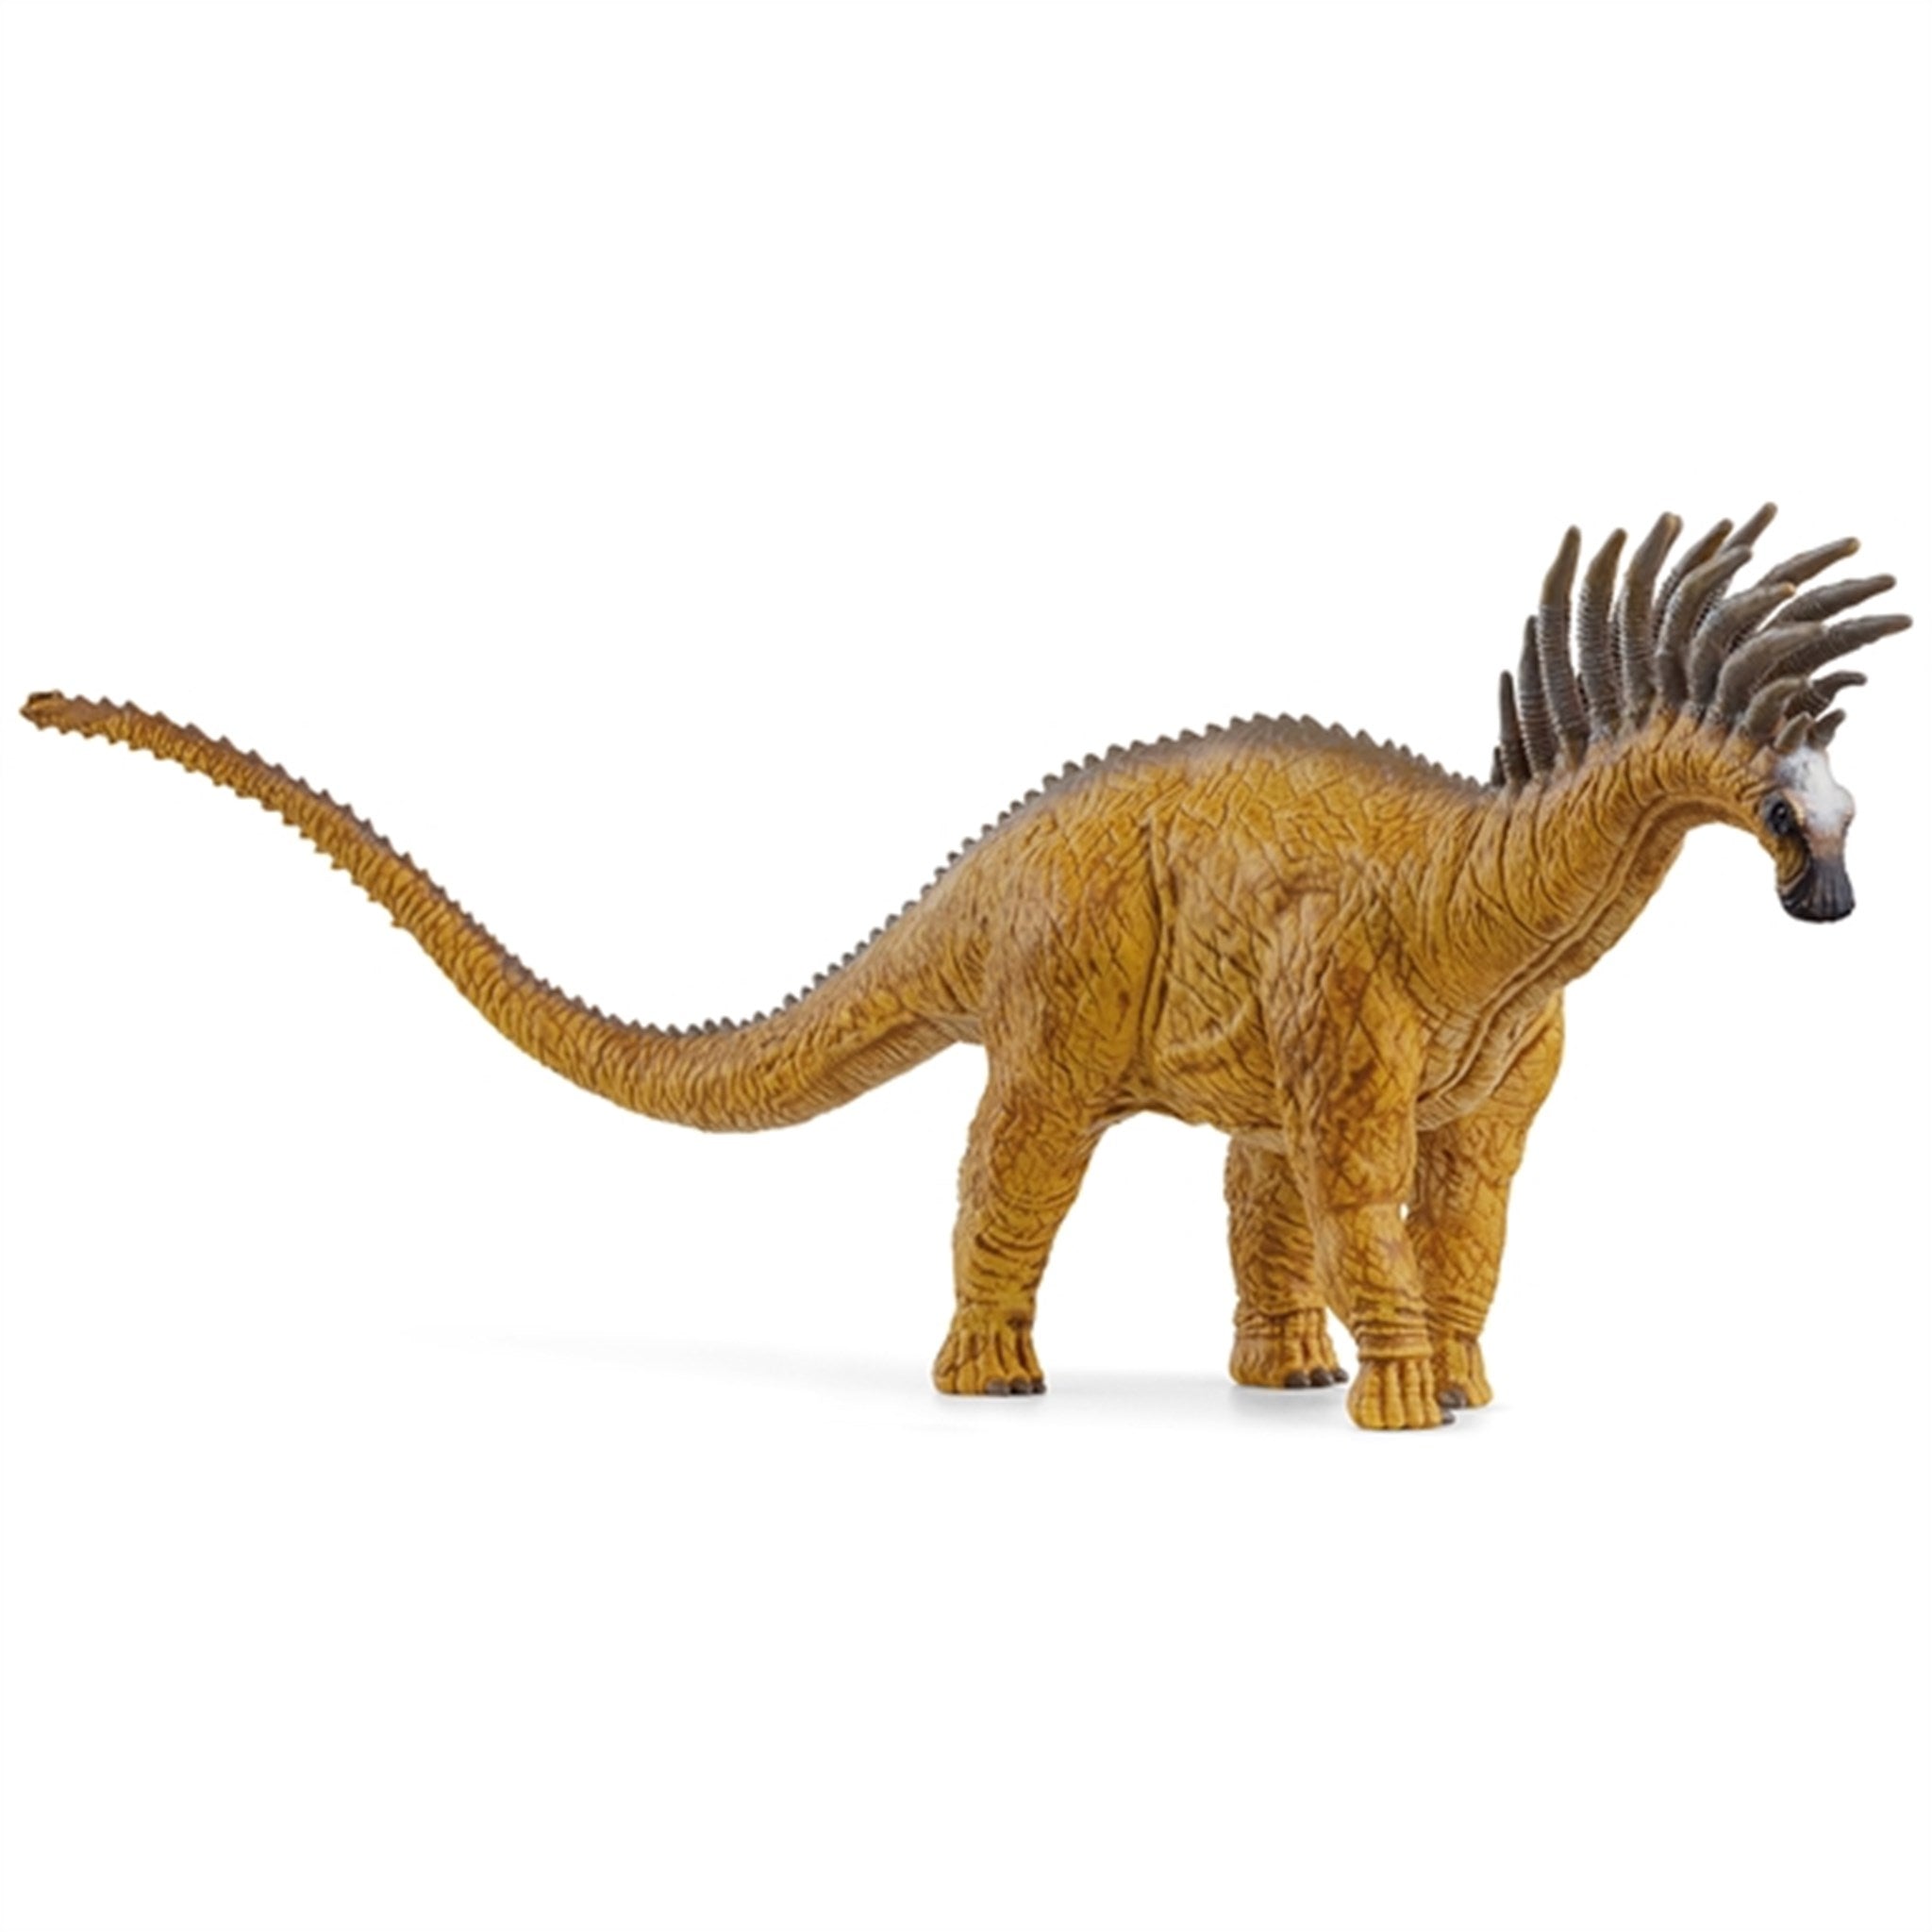 Schleich Dinosaurs Bajadasaurus